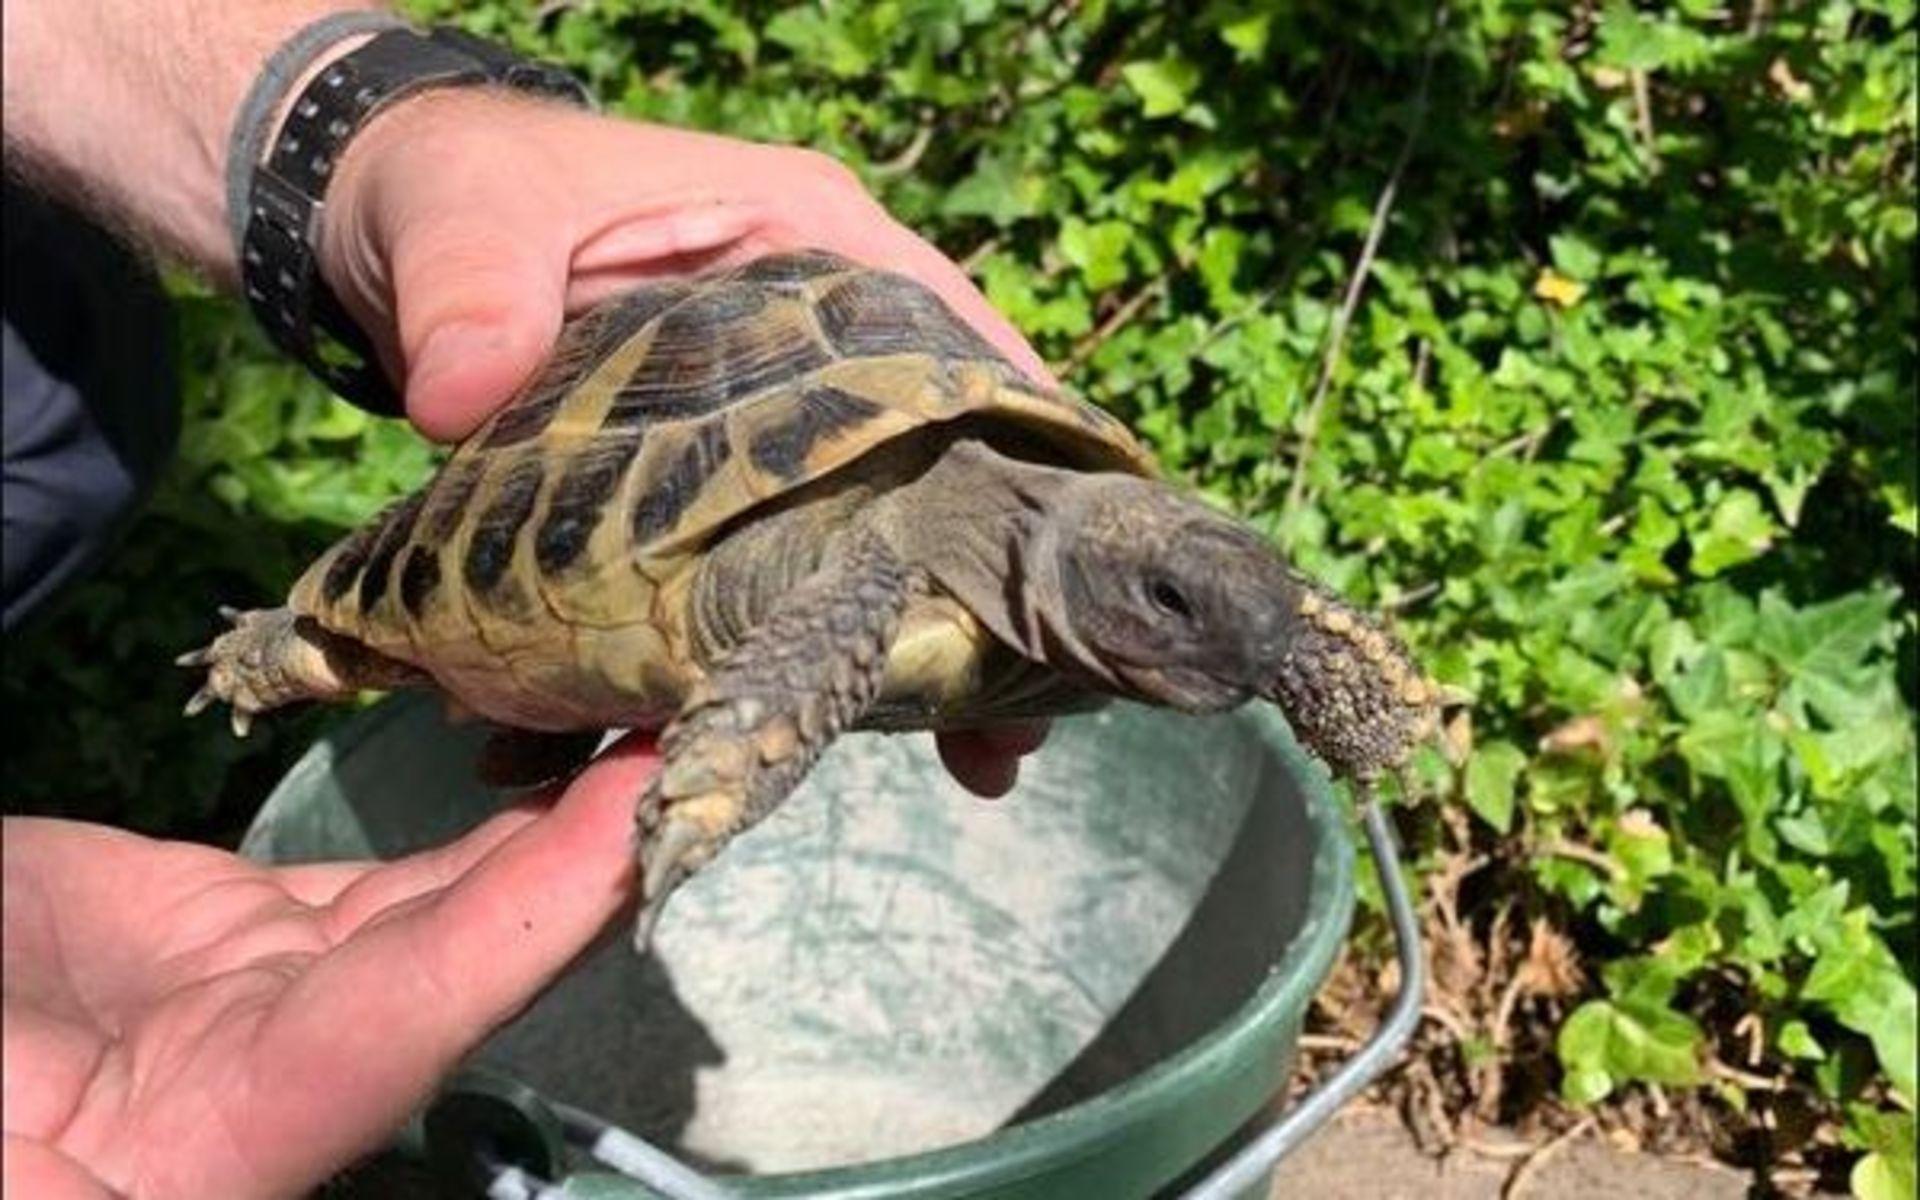 Sköldpaddan, som då var okänd, hittades vid ett markarbete och togs omhand av personal på platsen och senare polisen. 